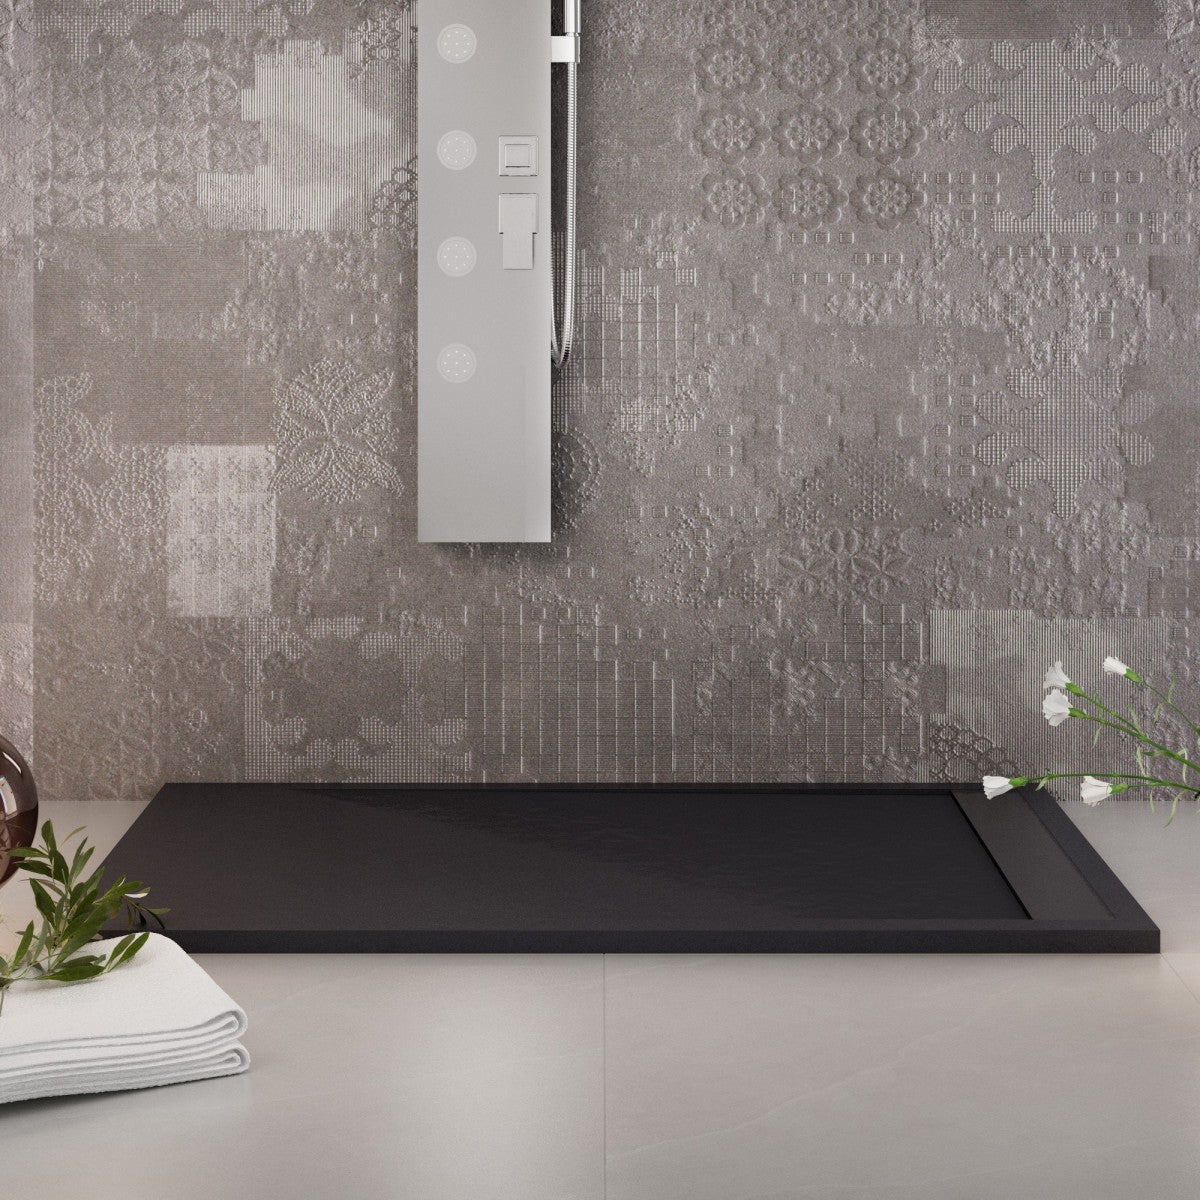 Piatto doccia in marmo resina nero pietra cemento prestige, misura 70x160